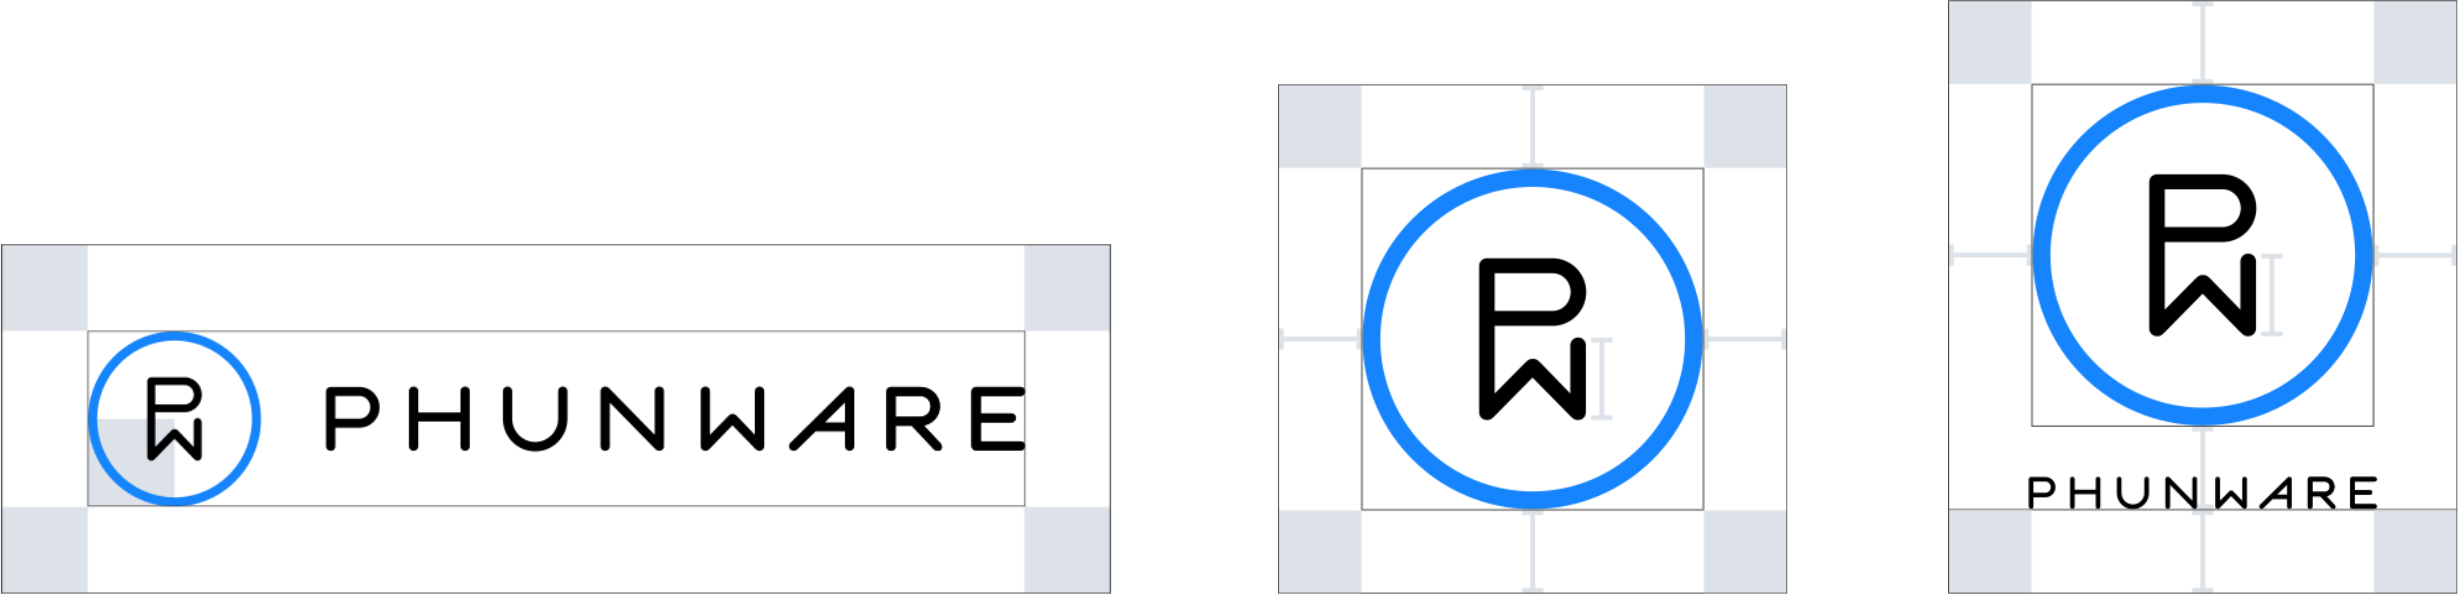 pw-logo-kit-exclusion-zone